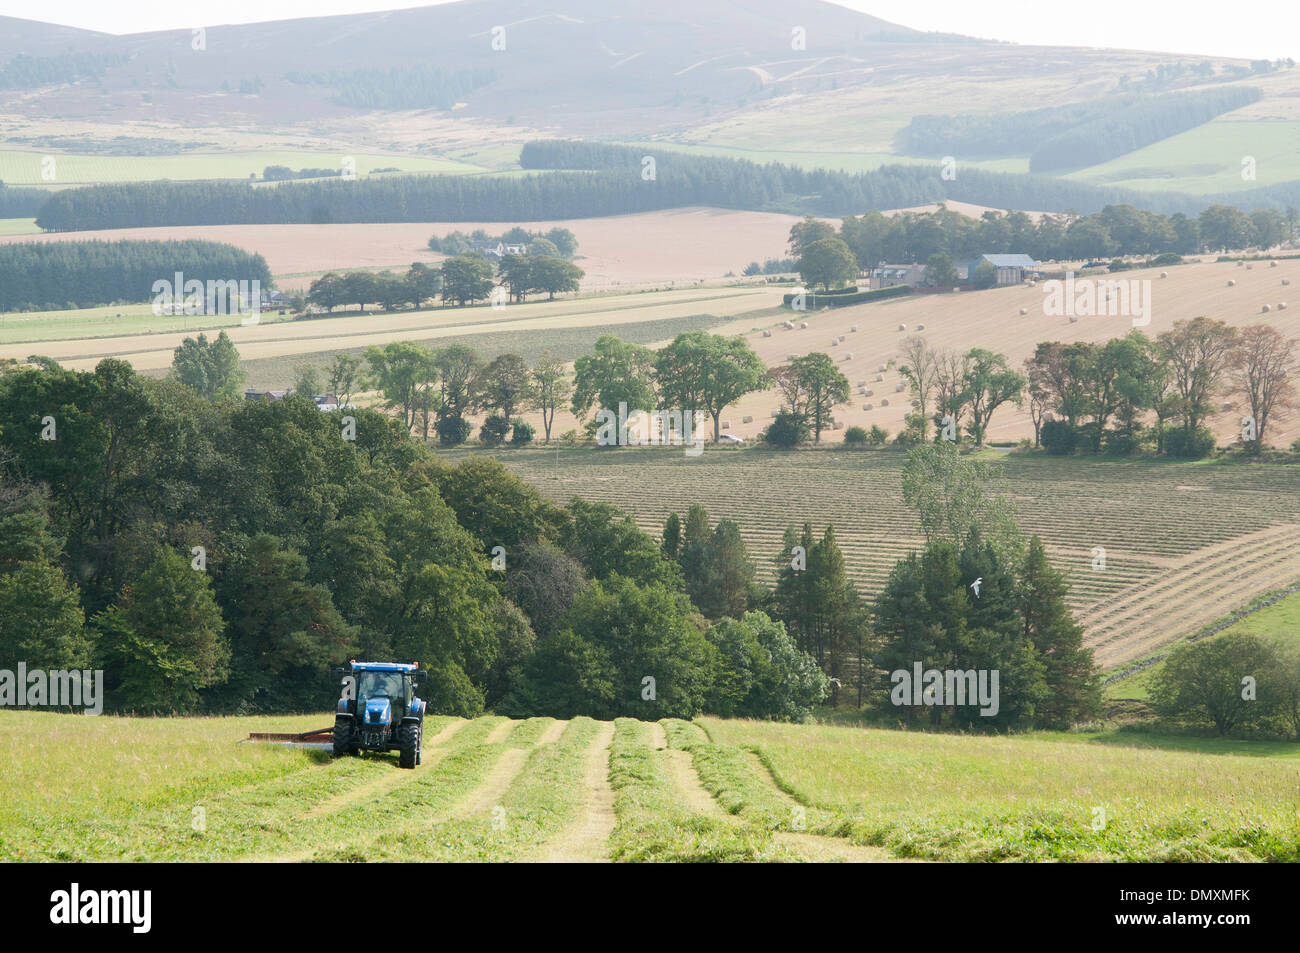 Royal Deeside nella campagna scozzese con l'agricoltura e un trattore Foto Stock